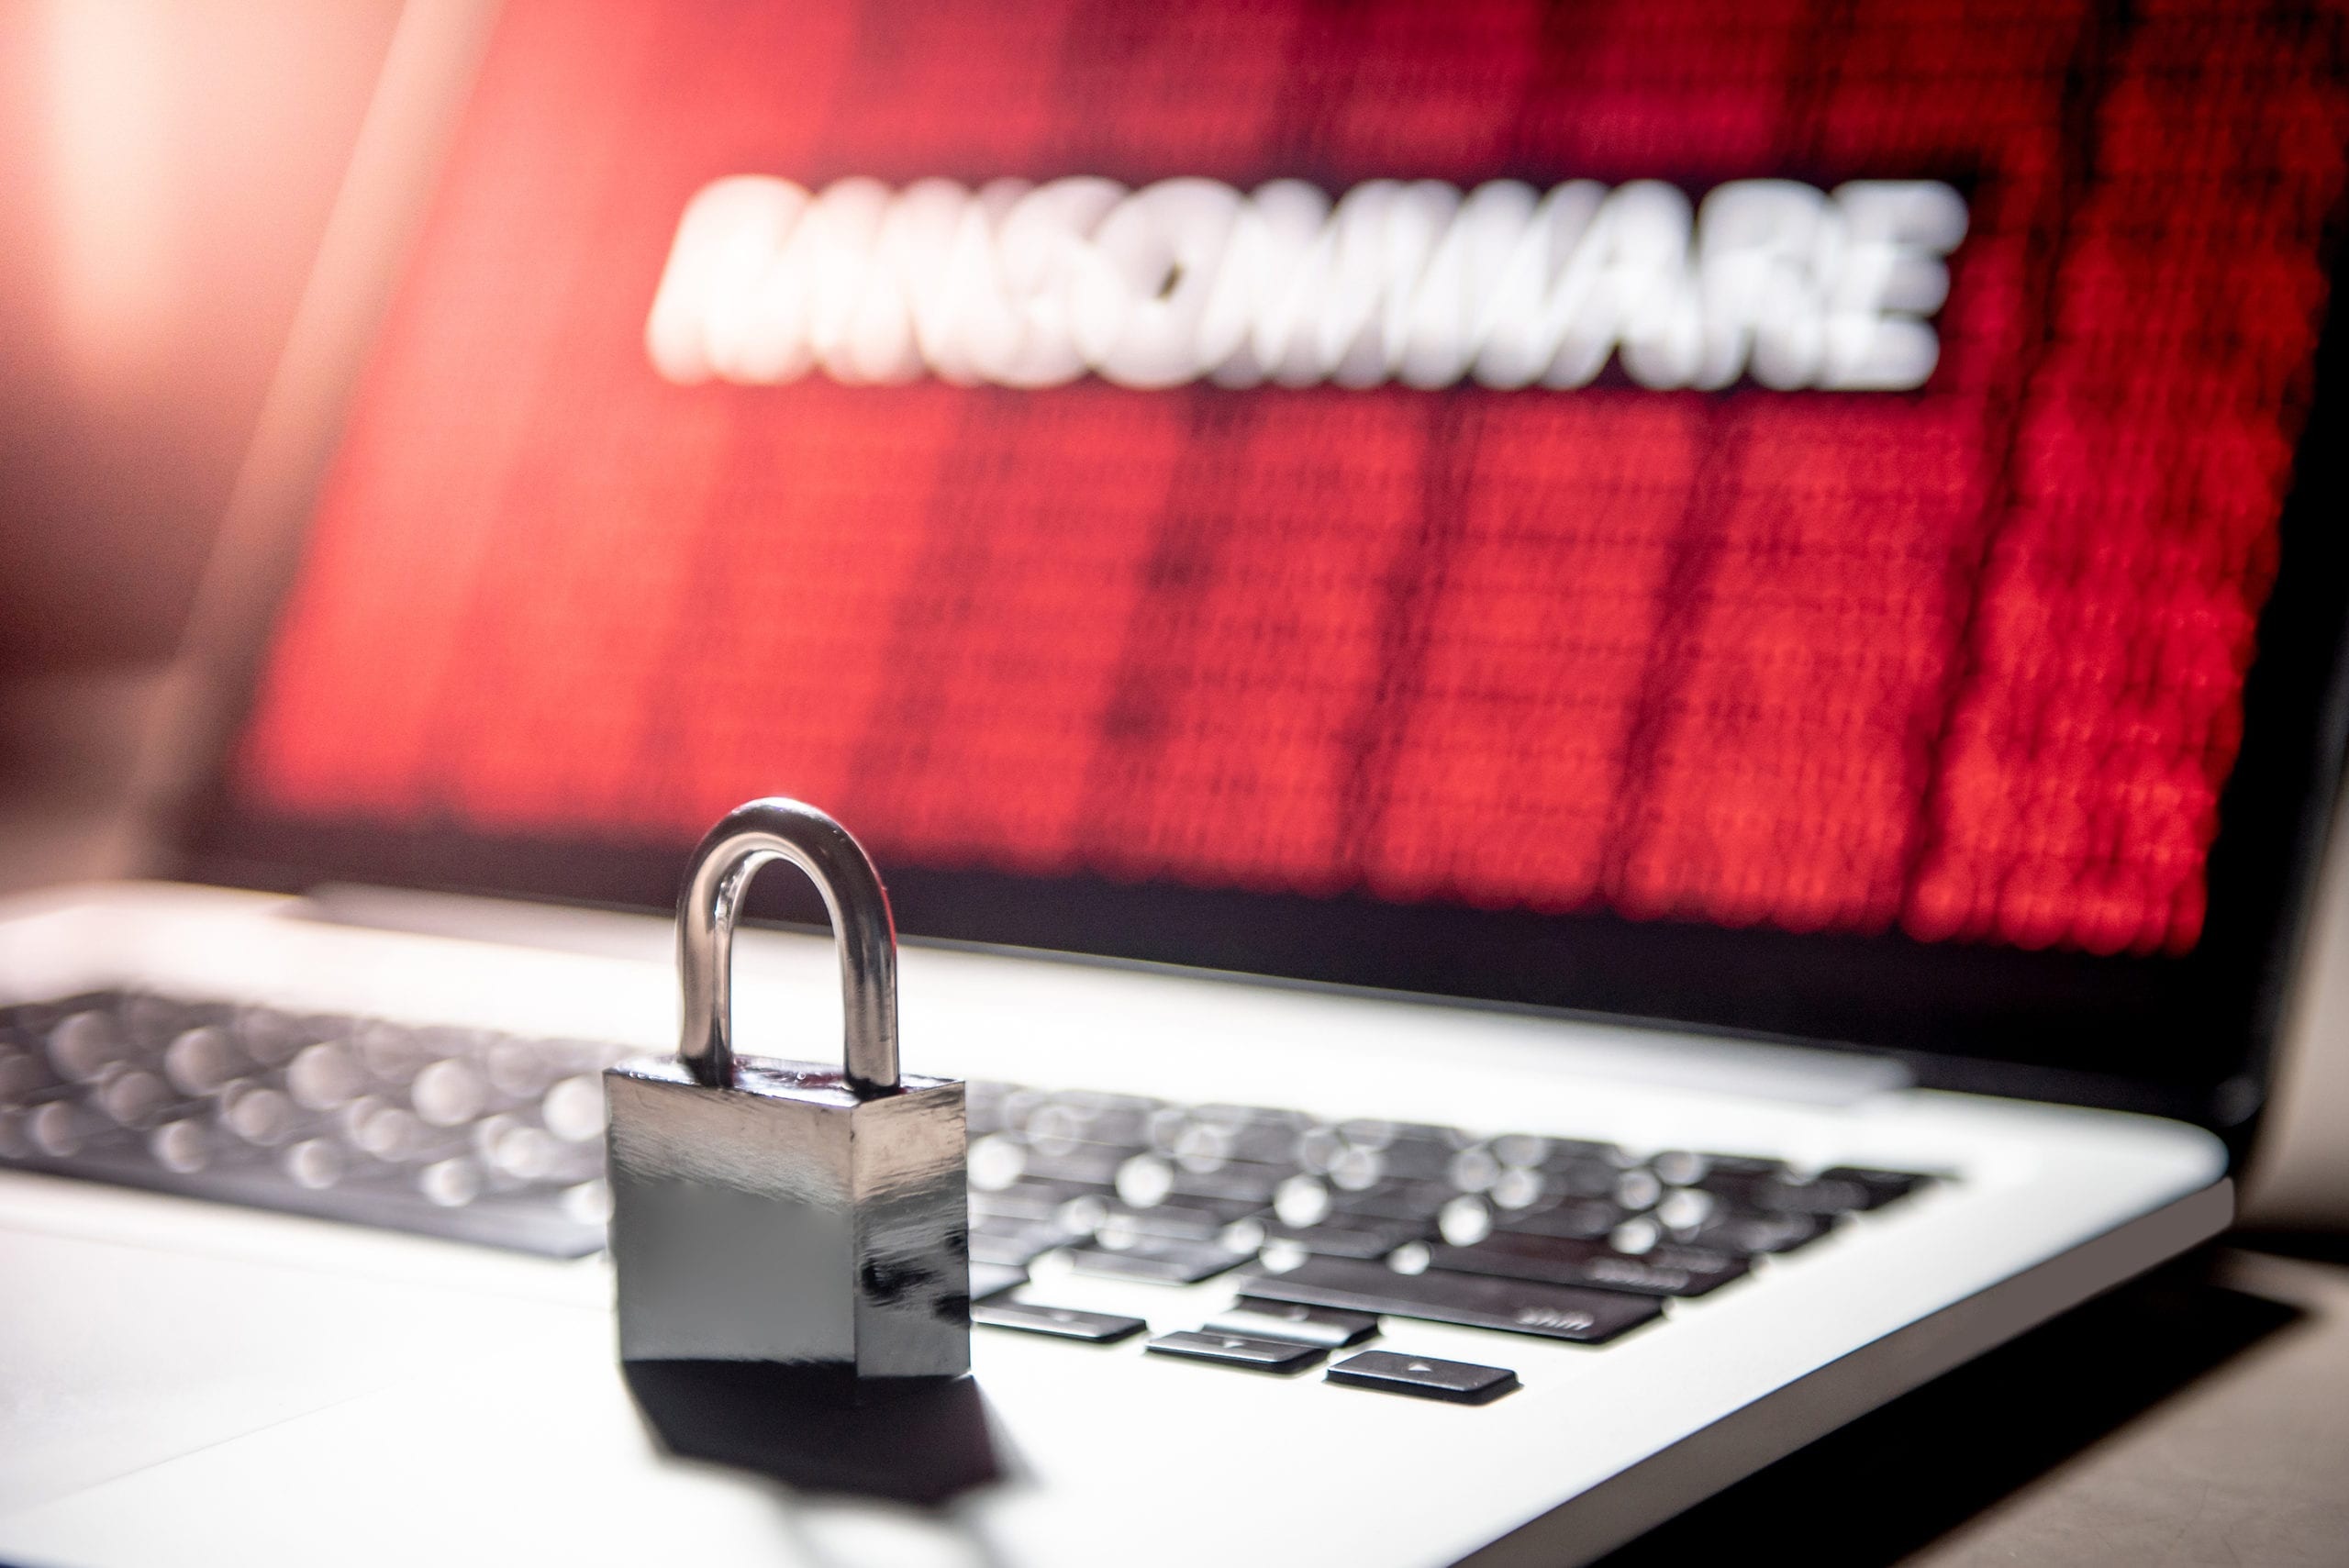 Κυβερνοασφάλεια: Αυξήθηκαν οι ομάδες ransomware σε αριθμό και εξειδίκευση